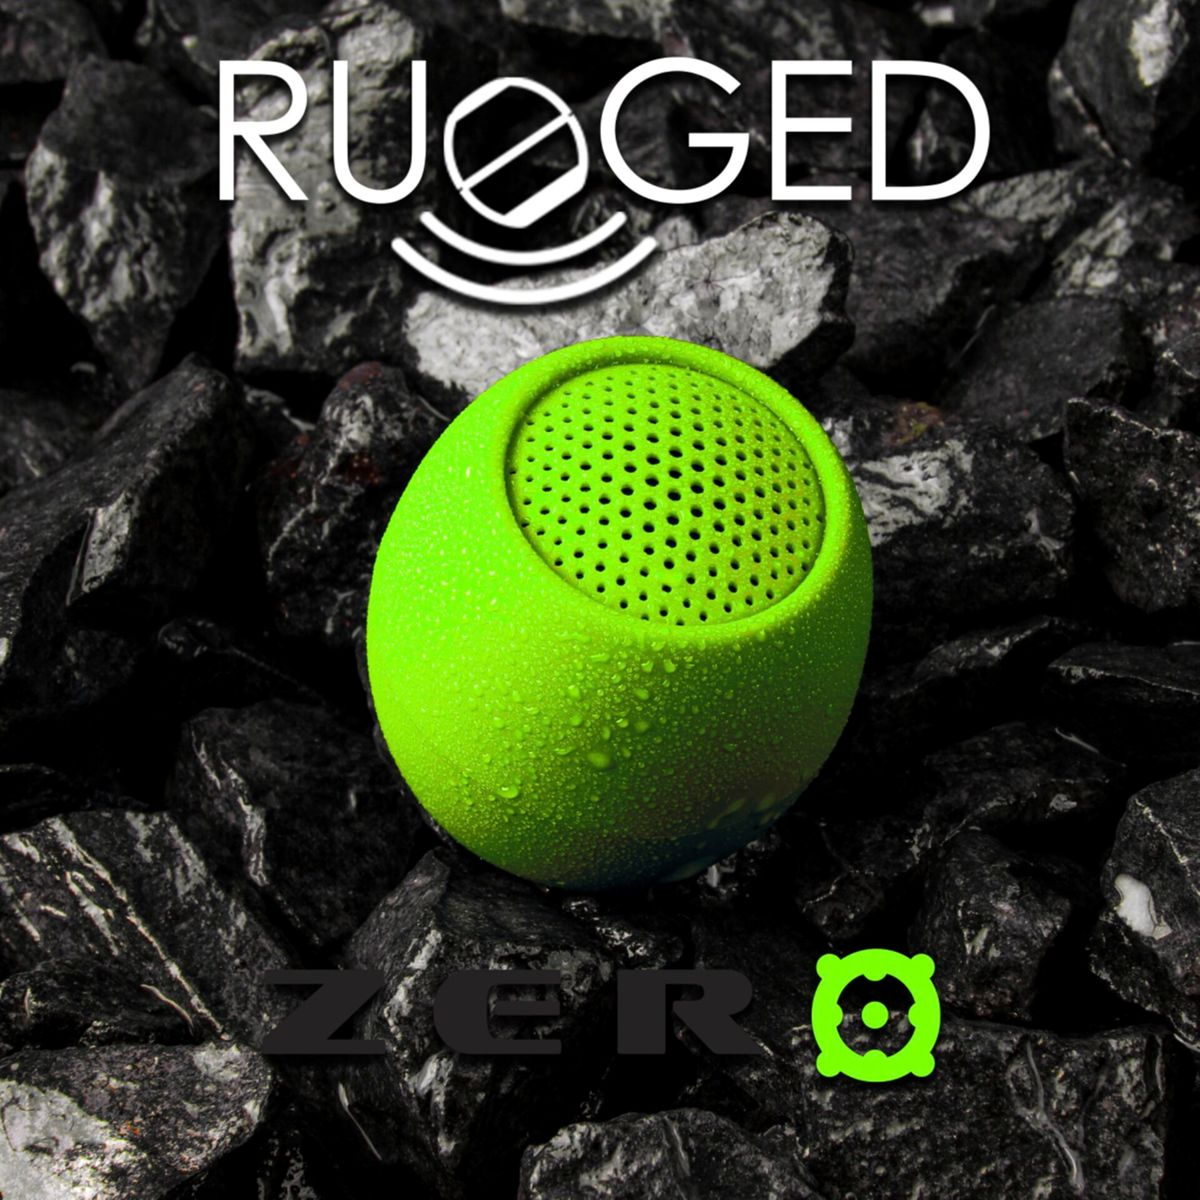 BOOMPODS Zero Lime grün Bluetooth-Lautsprecher, Green